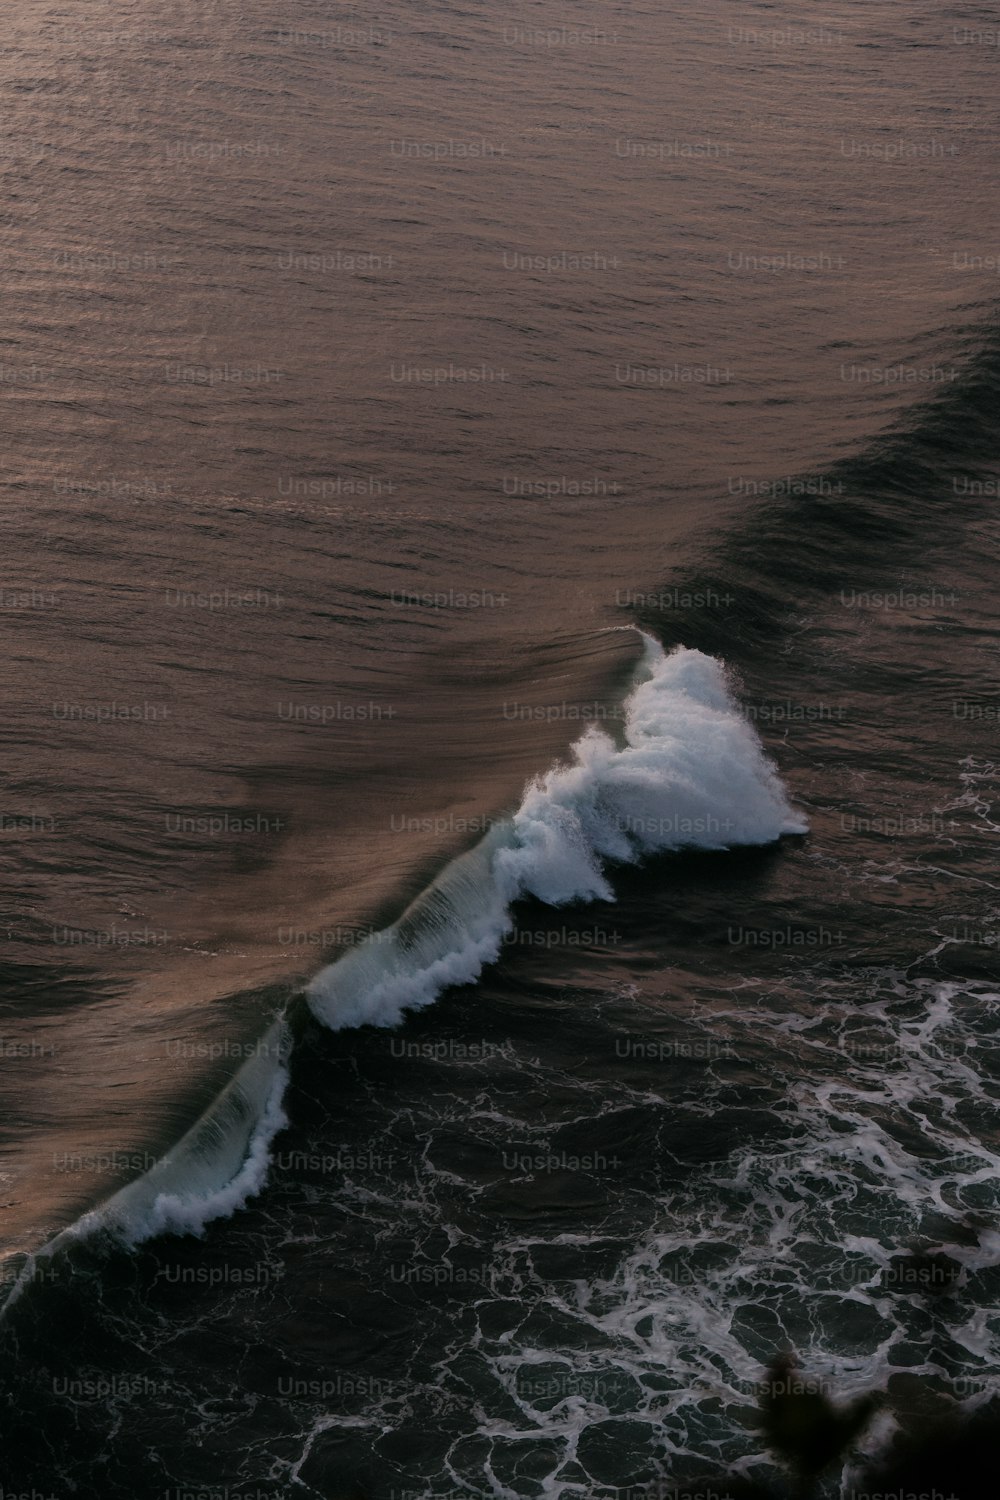 Un'onda sta arrivando verso la riva dell'oceano